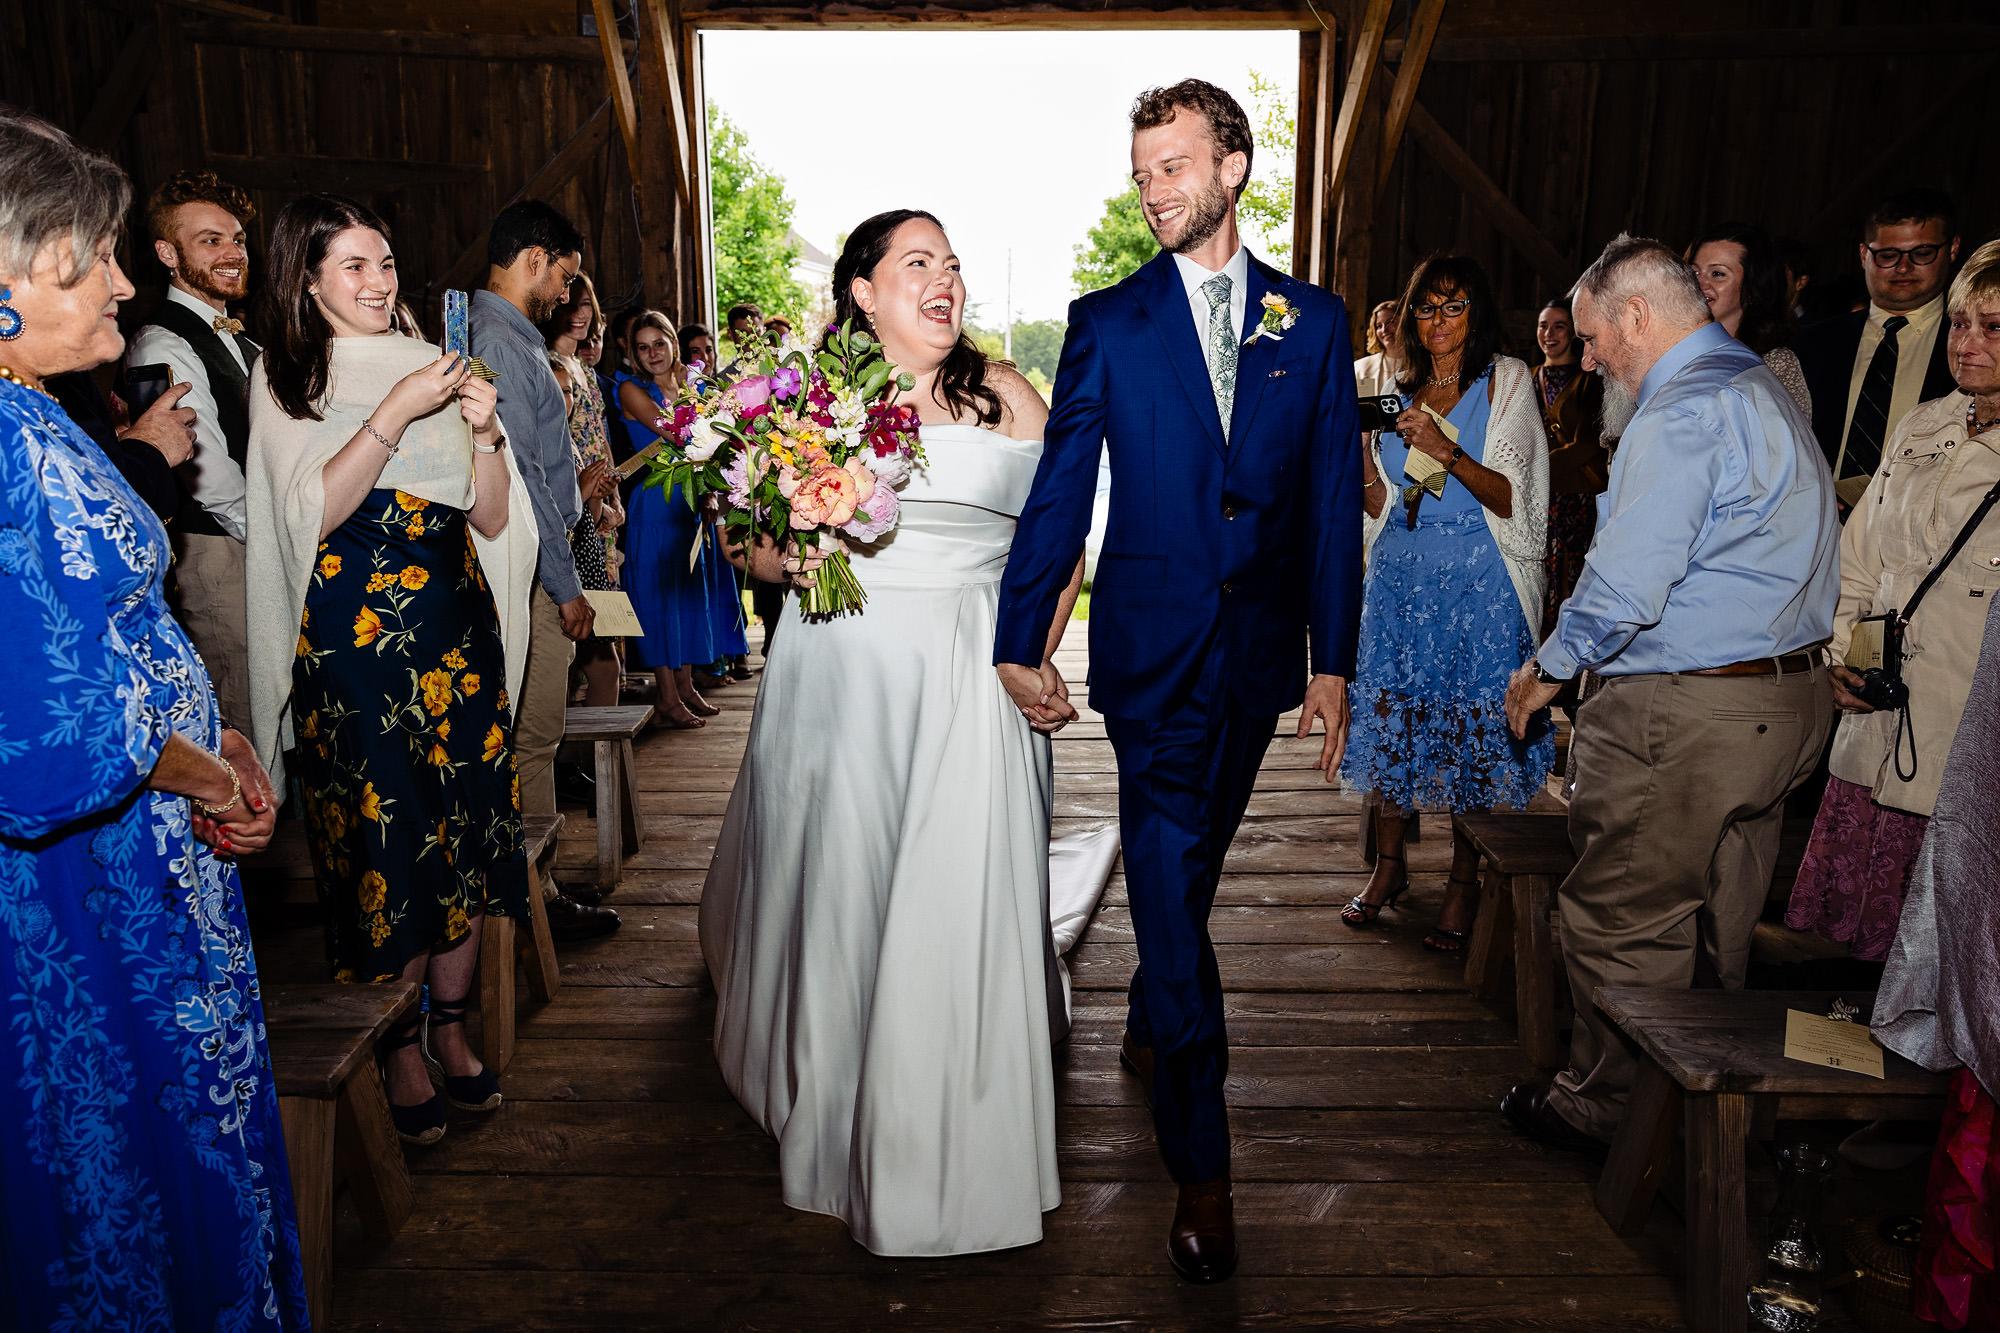 Holly & Ethan’s Broadturn Farm Wedding